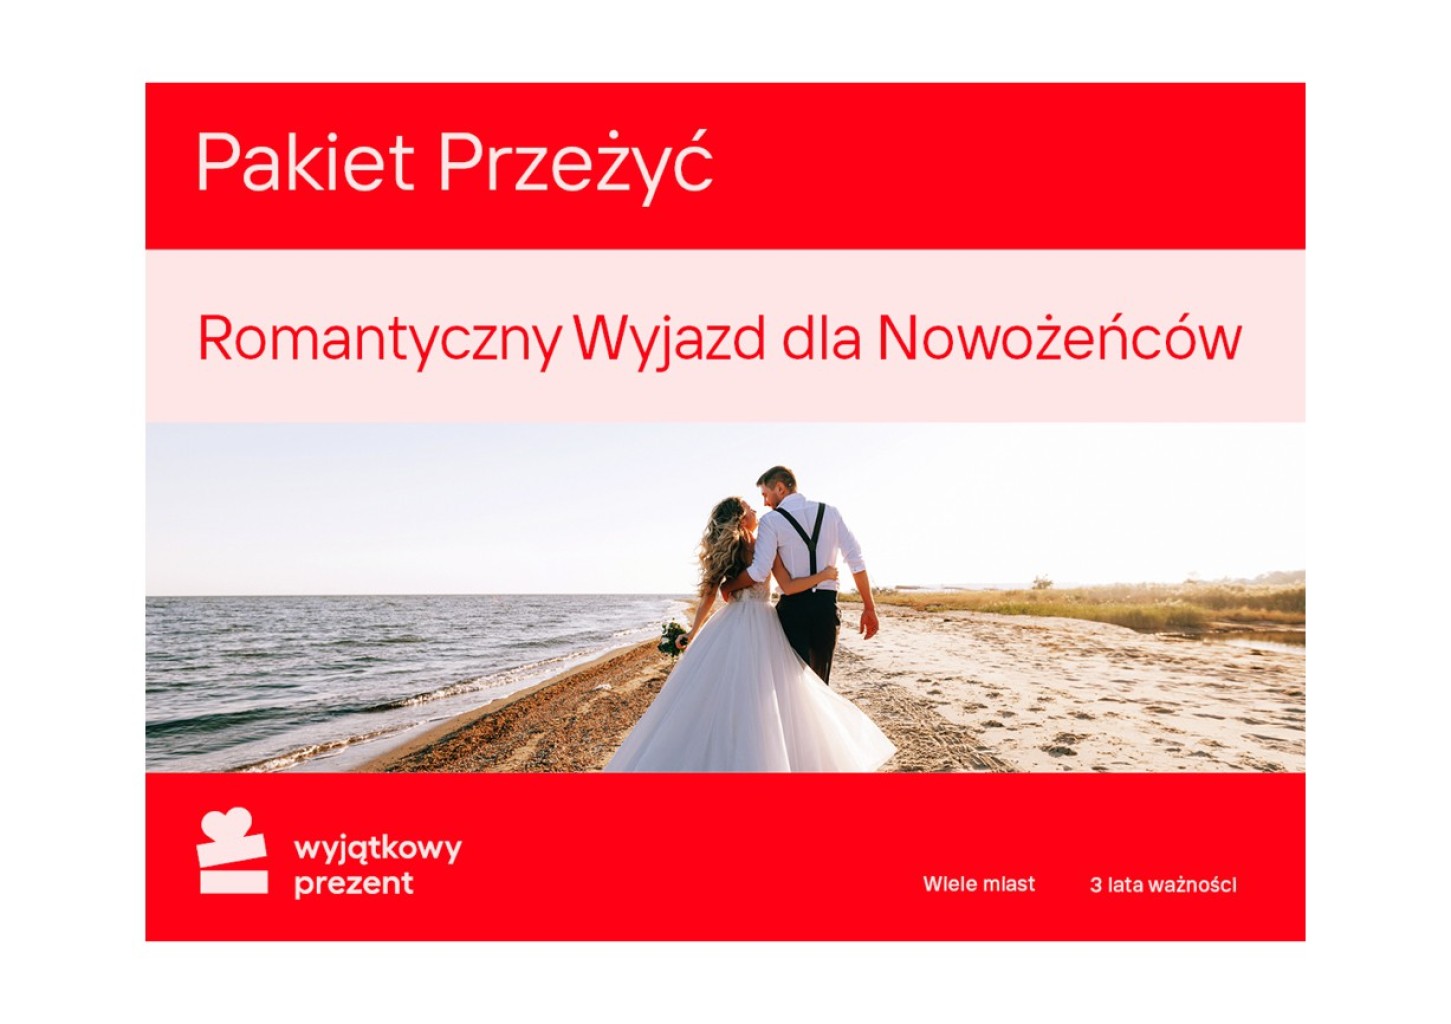 Pakiet Przeżyć "Romantyczny Wyjazd dla Nowożeńców"